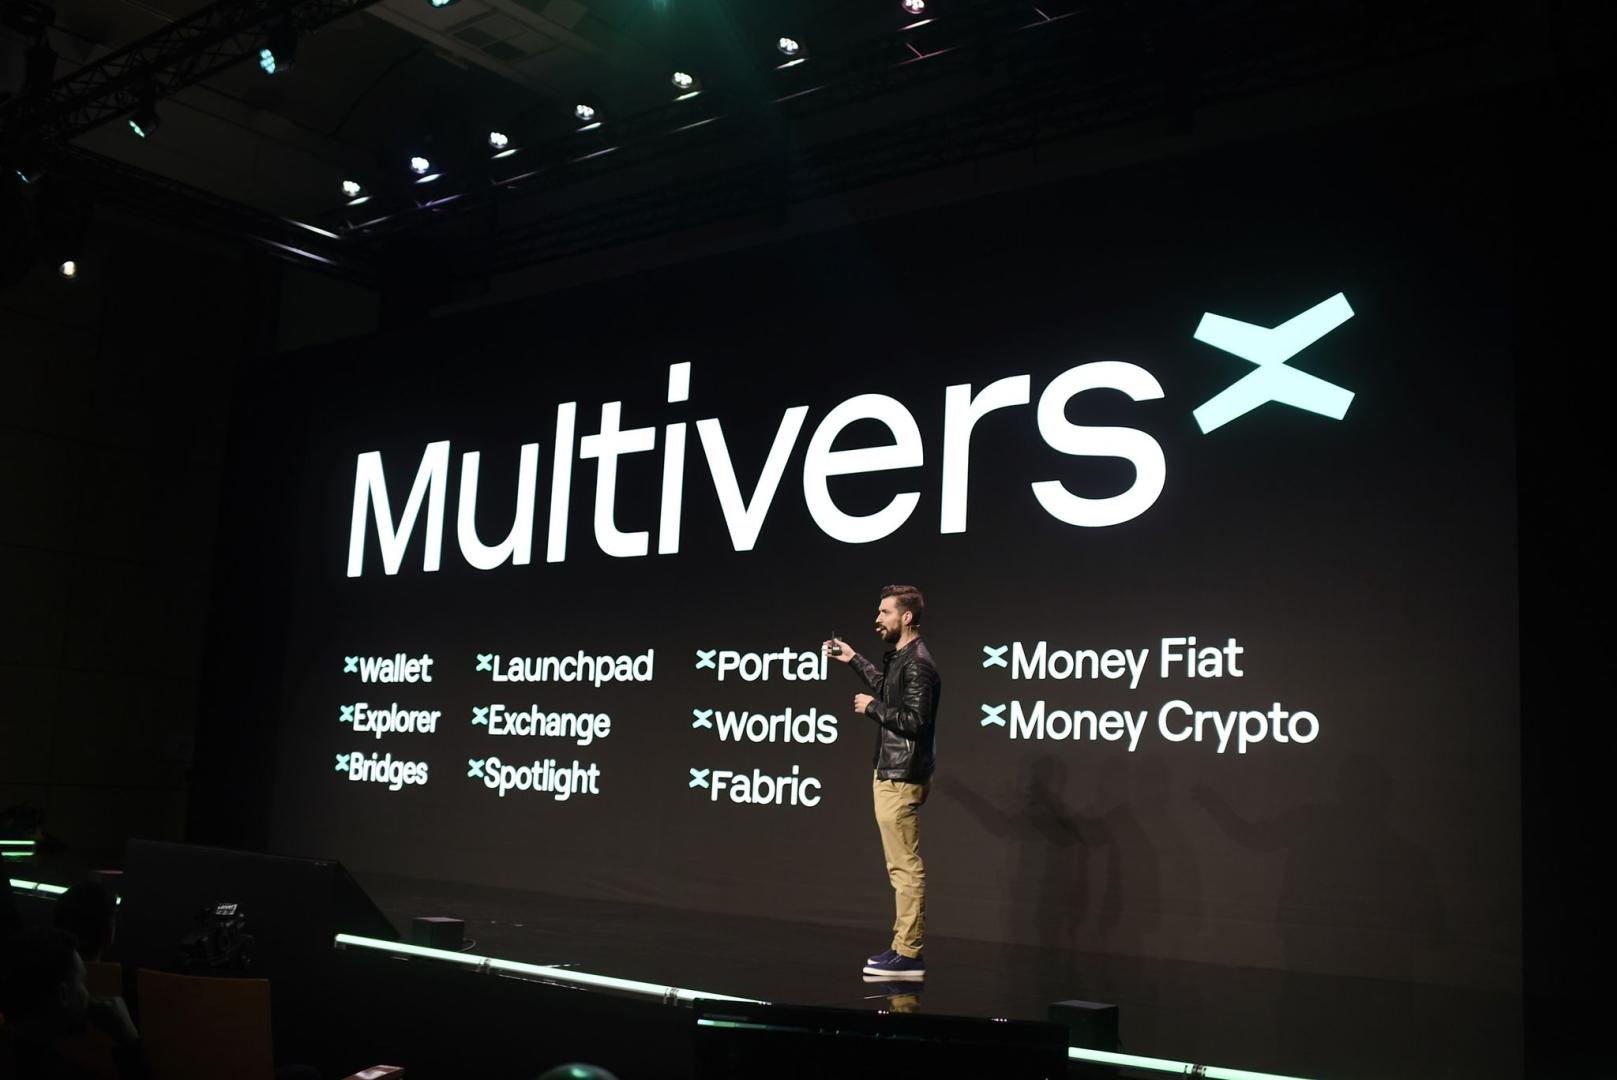 Elrond verwandelt sich in MultiversX und bringt 3 neue Metaverse-Produkte auf den Markt